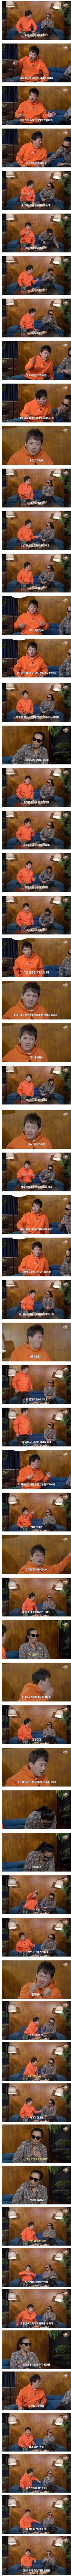 ヒョン·ジニョン過去の拘置所申告式のエピソードwww